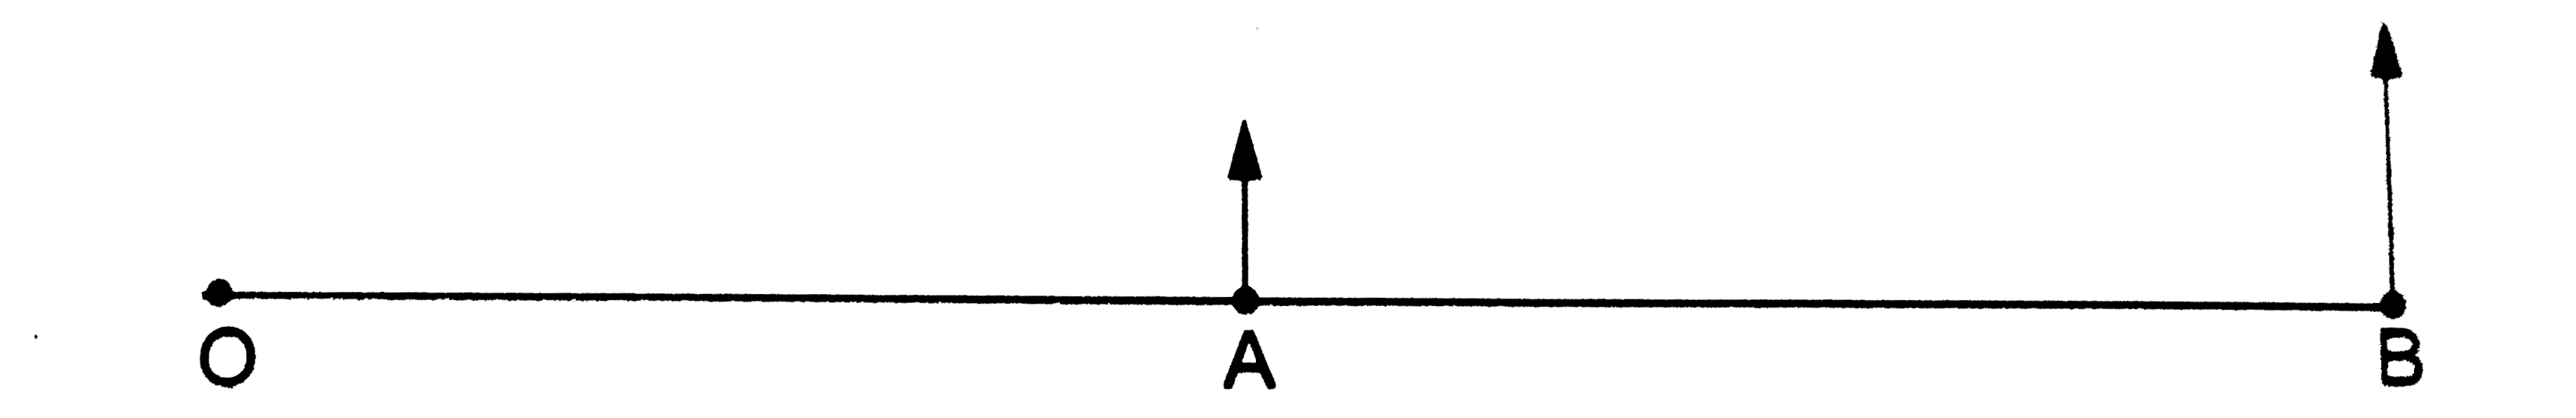 एक प्रयोगशाला में d लंबाई की एक नगण्य भार वाली छड़ अपने एक किनारे O के प्रति एक तल में कोणीय वेग omega से घूम रही है (चित्र 16.W2) | छड़ के केंद्र A पर तथा दूसरे सिरे B पर, m द्रव्यमान के दो कण जुड़े है | A को मूलबिंदु मानकर उस फ्रेम S की कल्पना करें जिसके अक्ष प्रयोगशाला के फ्रेम के अक्षों के समानांतर हो | इस फ्रेम में B पर के कण का A पर के कण के सापेक्ष  संवेग कोणीय निकालें |